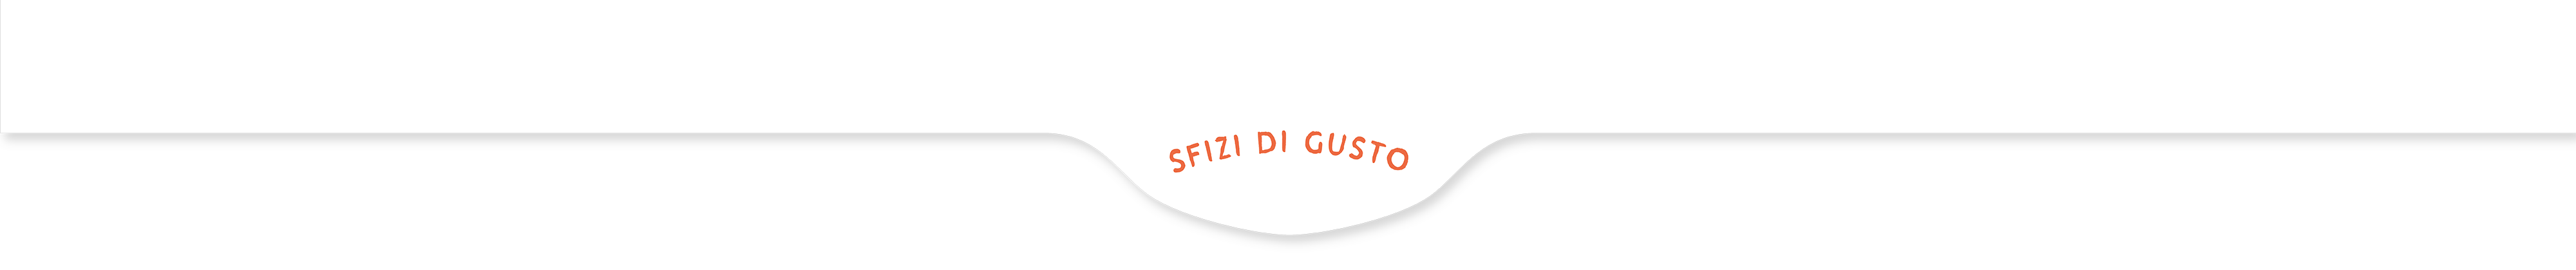 sfizi-gusto-header-sito-new